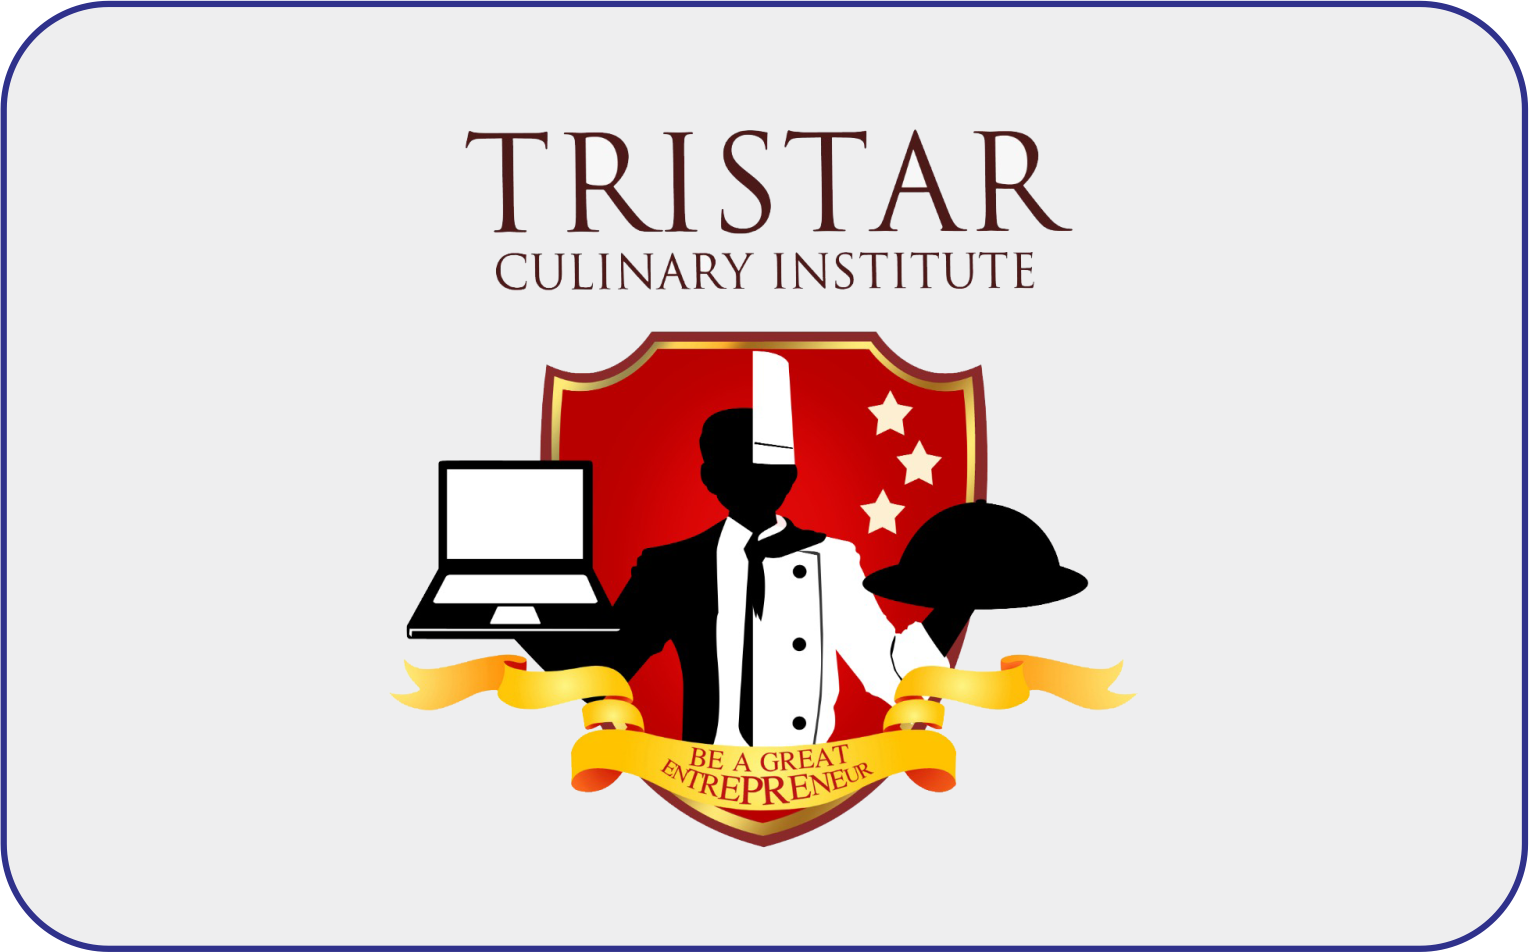 Tristar Culinary Institute